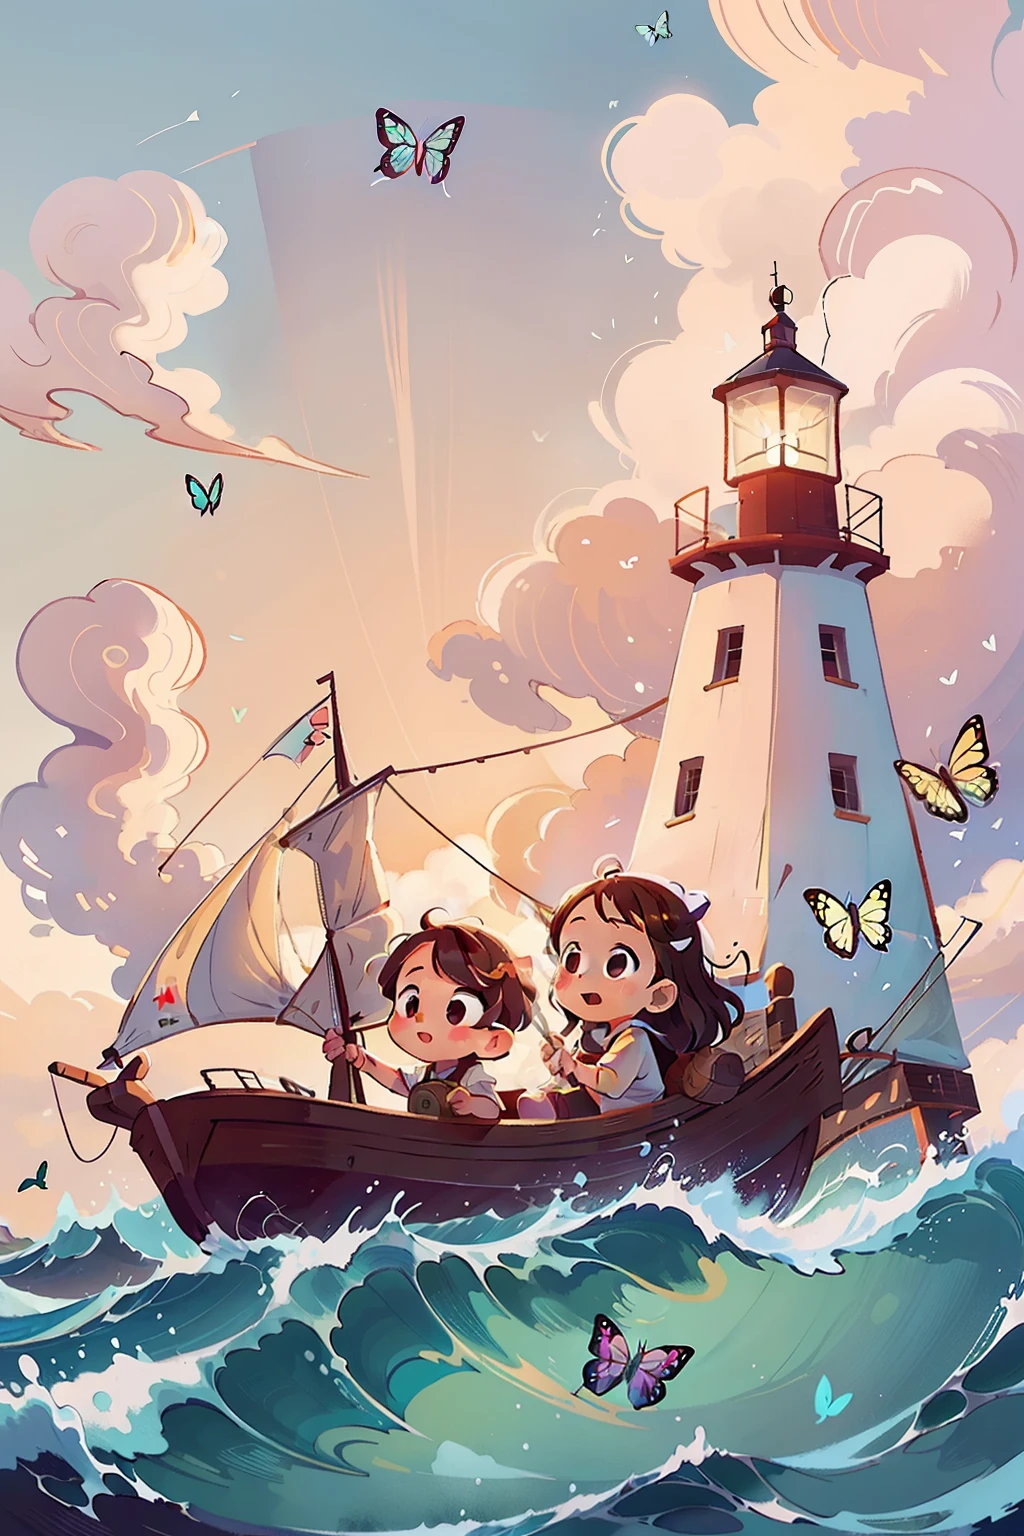 生成两个小女孩乘船航行的图像, 波浪, 海, 天空和白云. 色彩斑斓的蝴蝶, 背景中的灯塔,